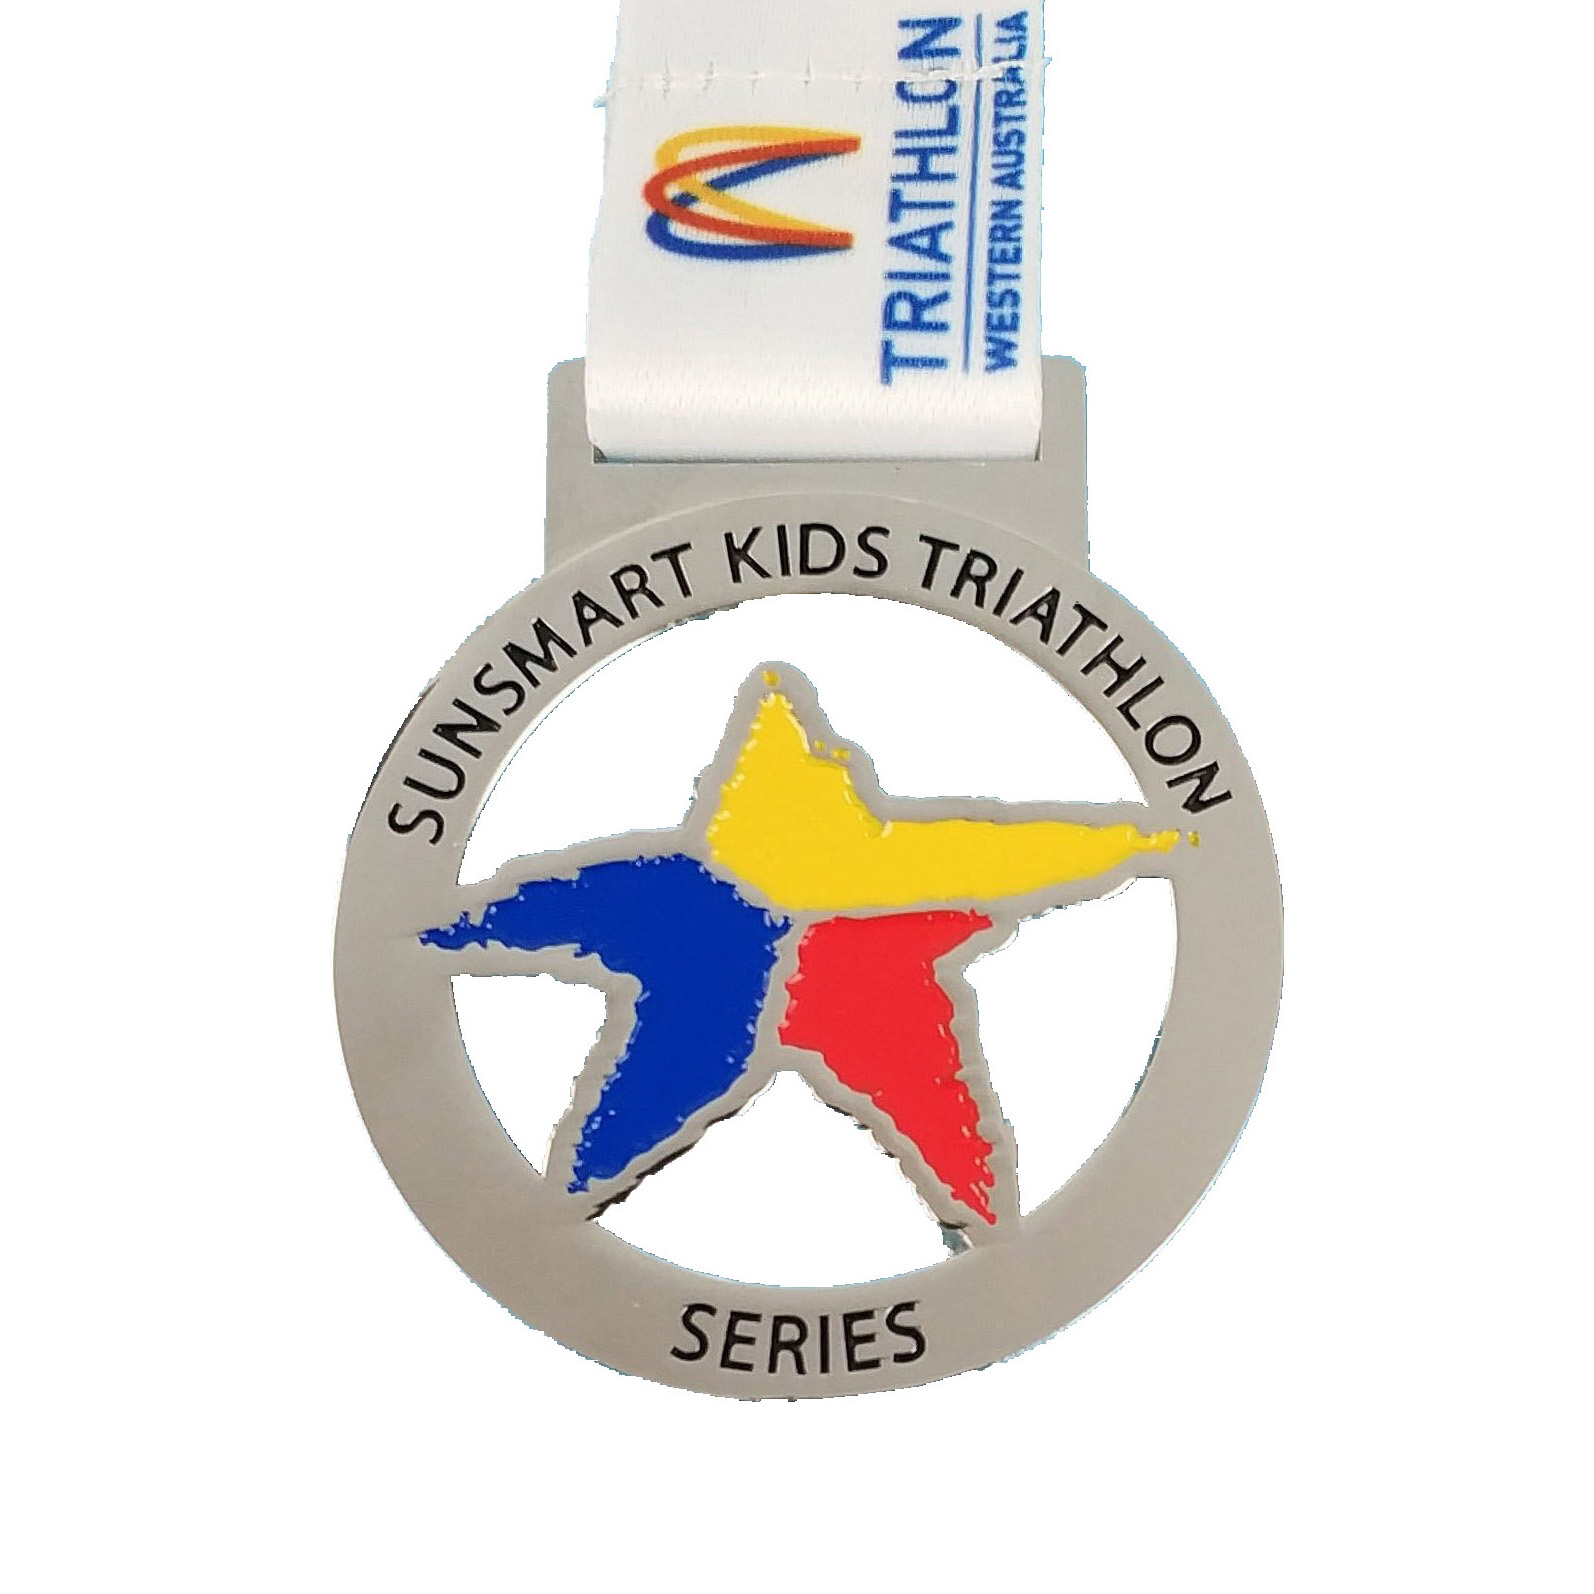 Serie-medaille voor triatlon voor kinderen